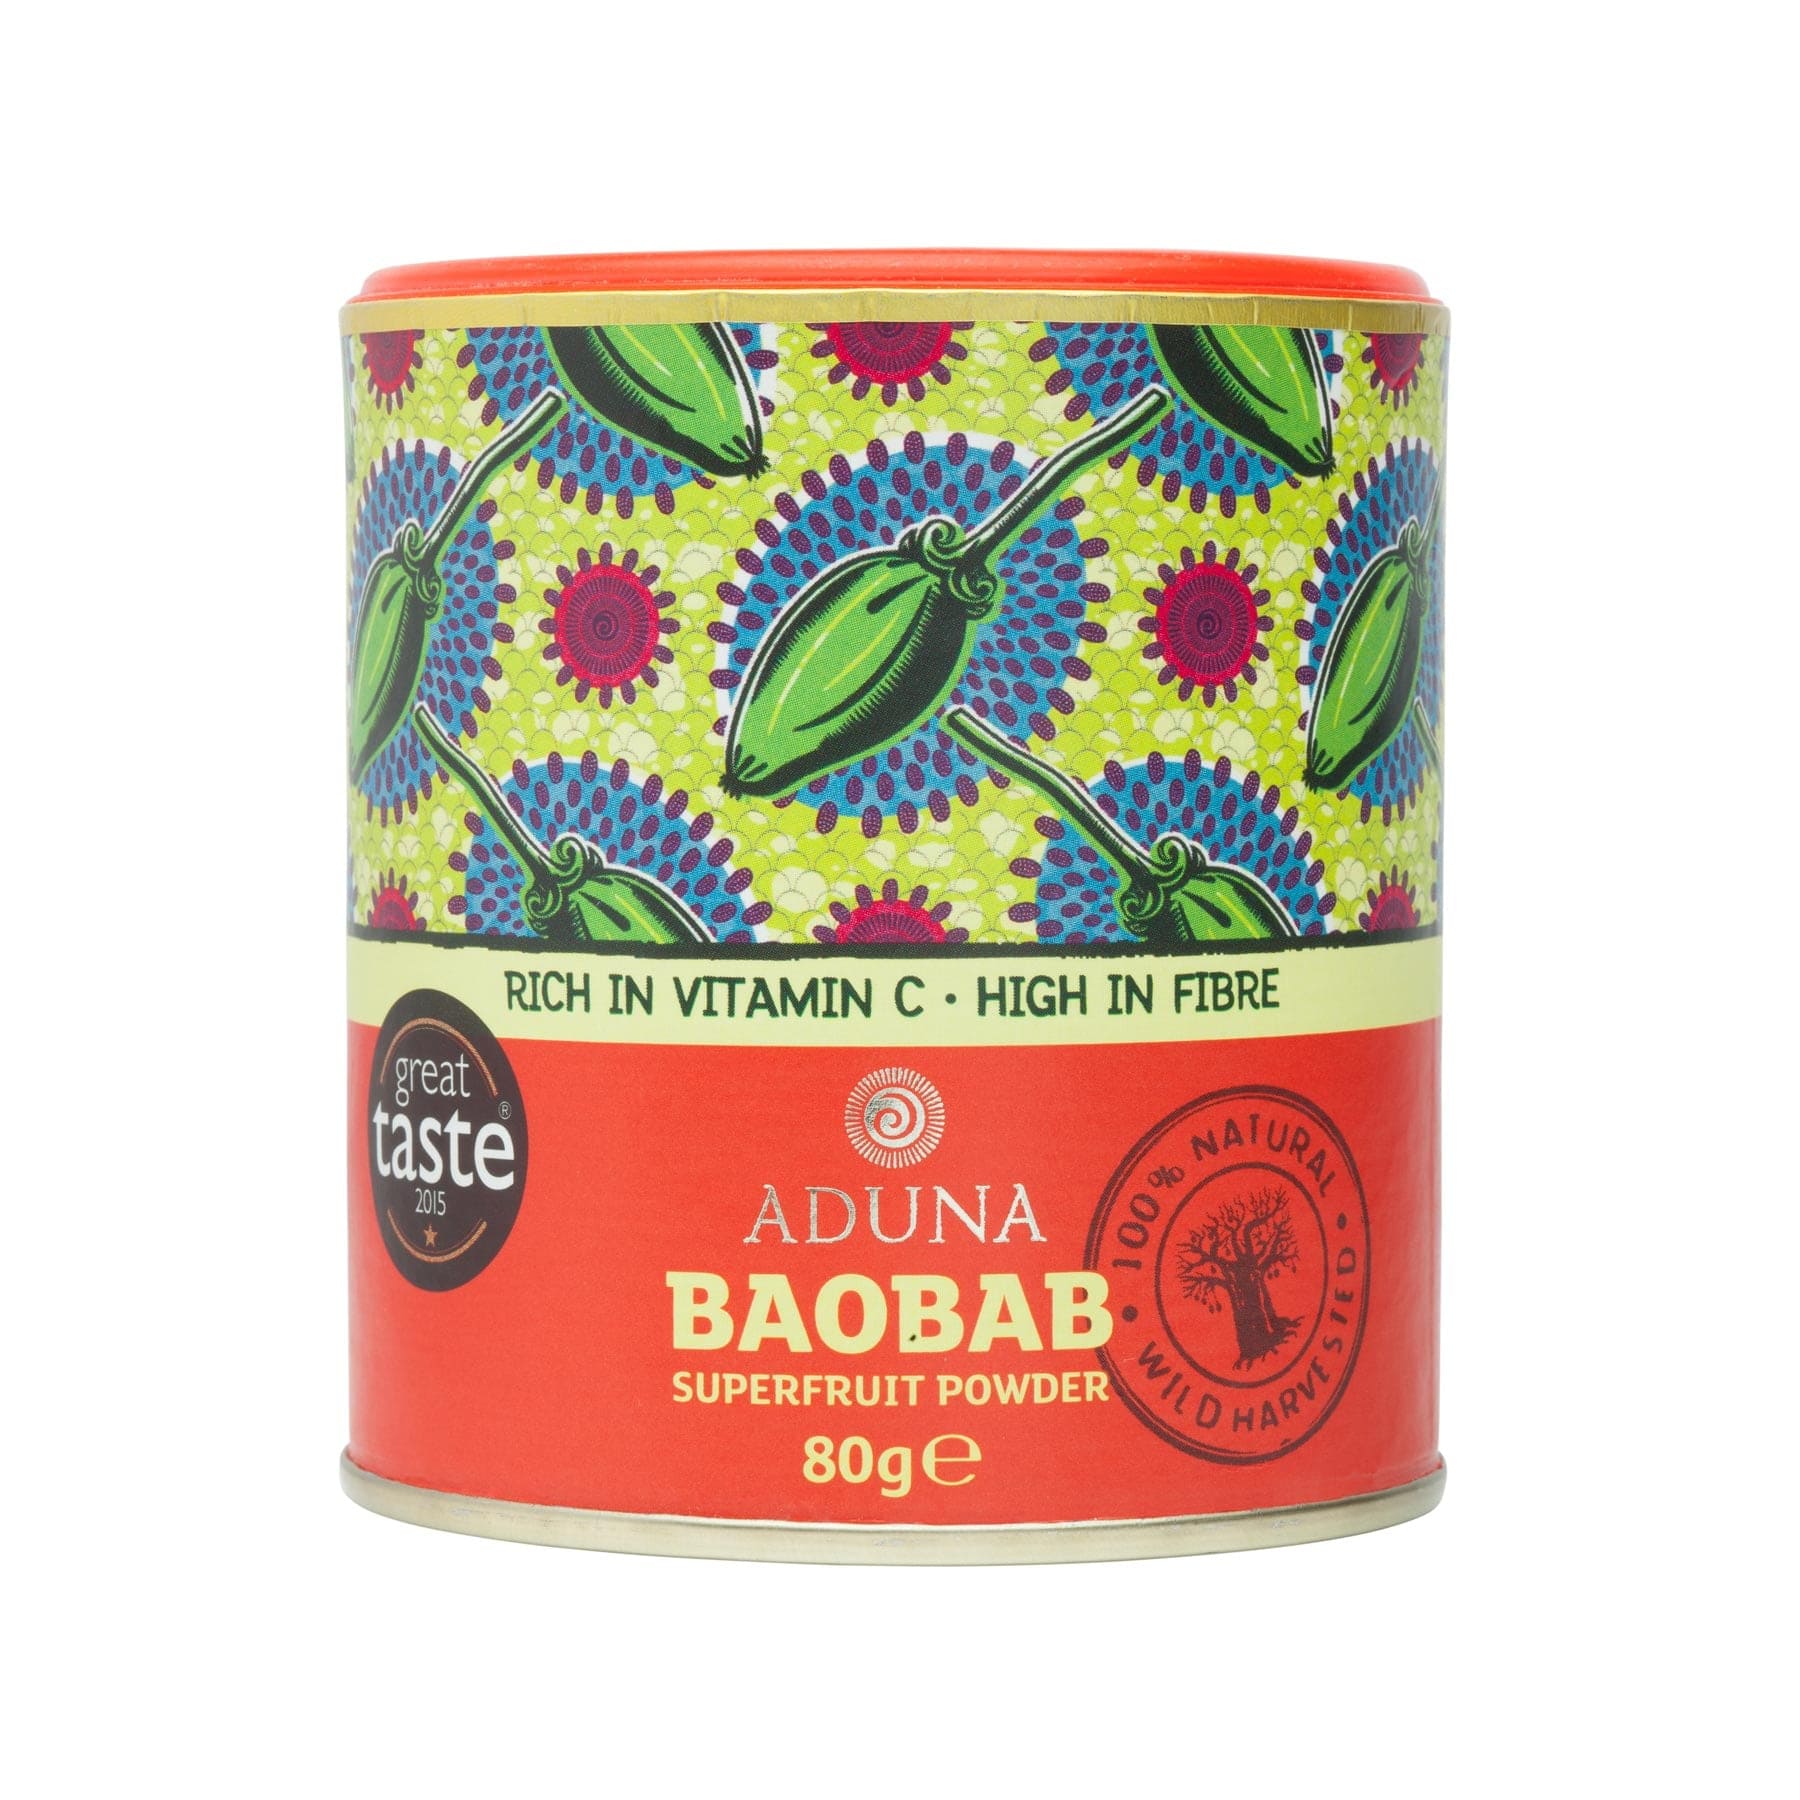 Baobab superfruit powder 80g